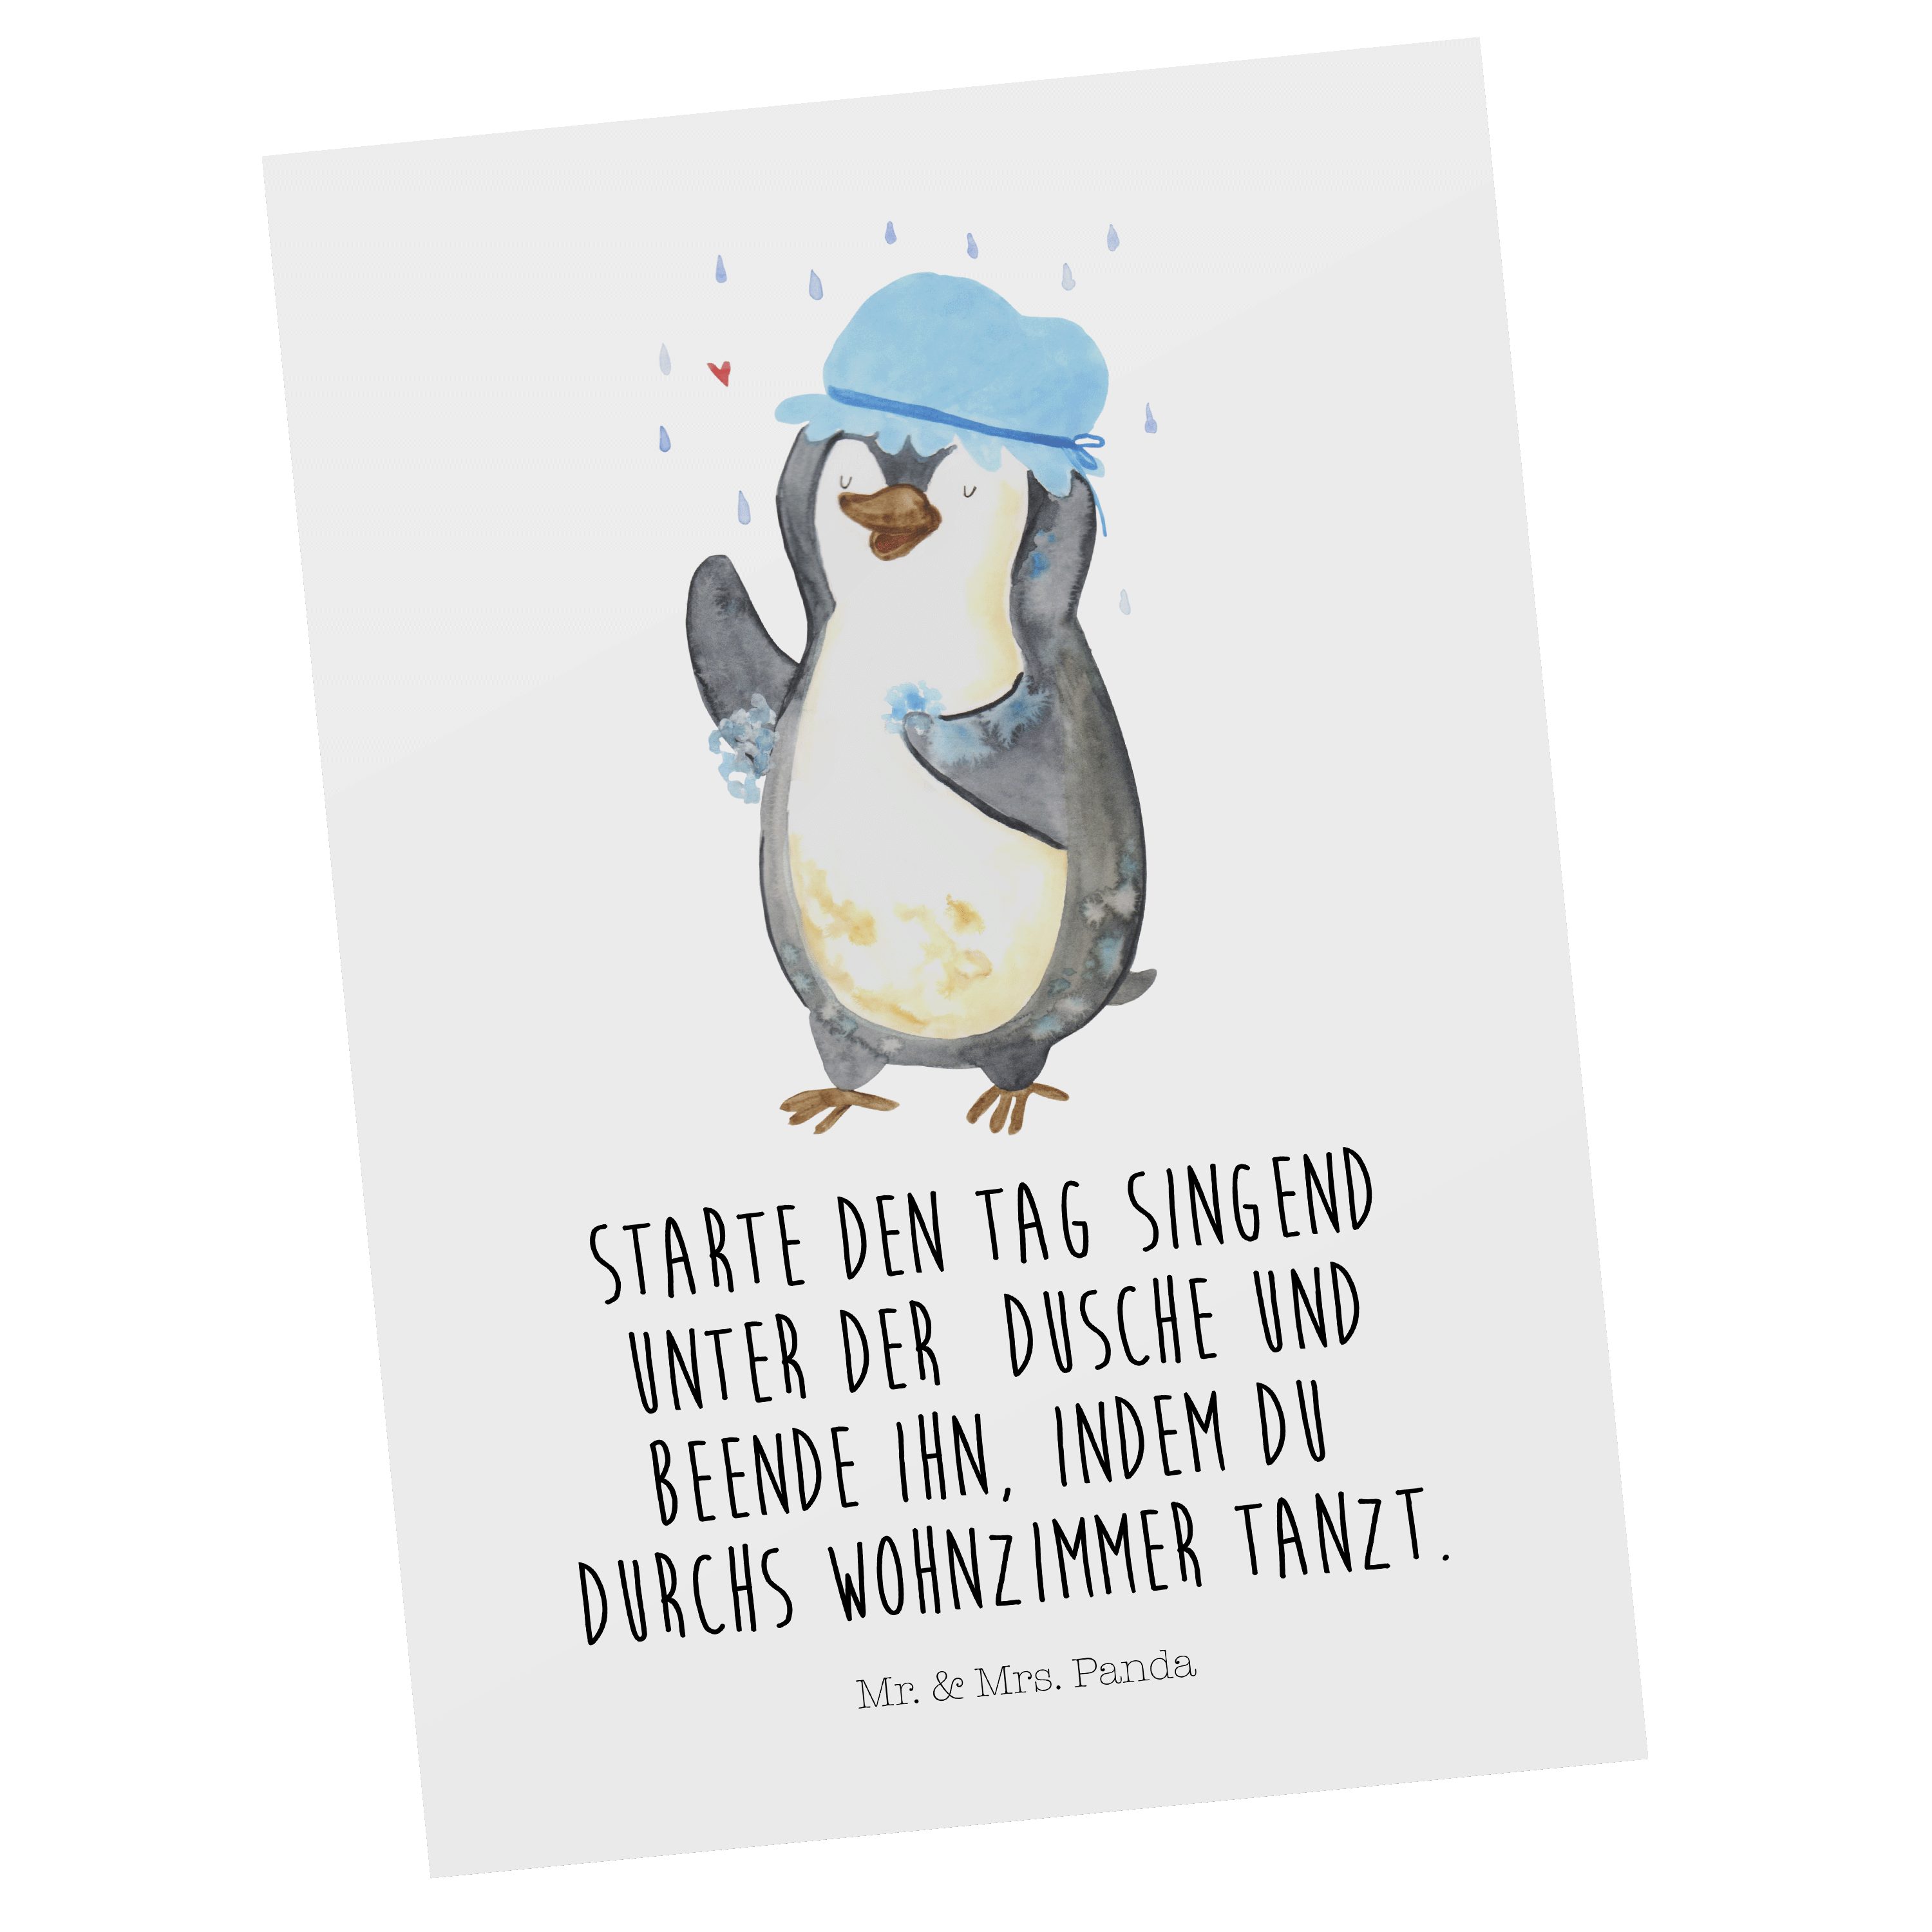 Mr. & Mrs. Panda Postkarte Pinguin duscht - Weiß - Geschenk, Motivation, duschen, Lebensmotto, G